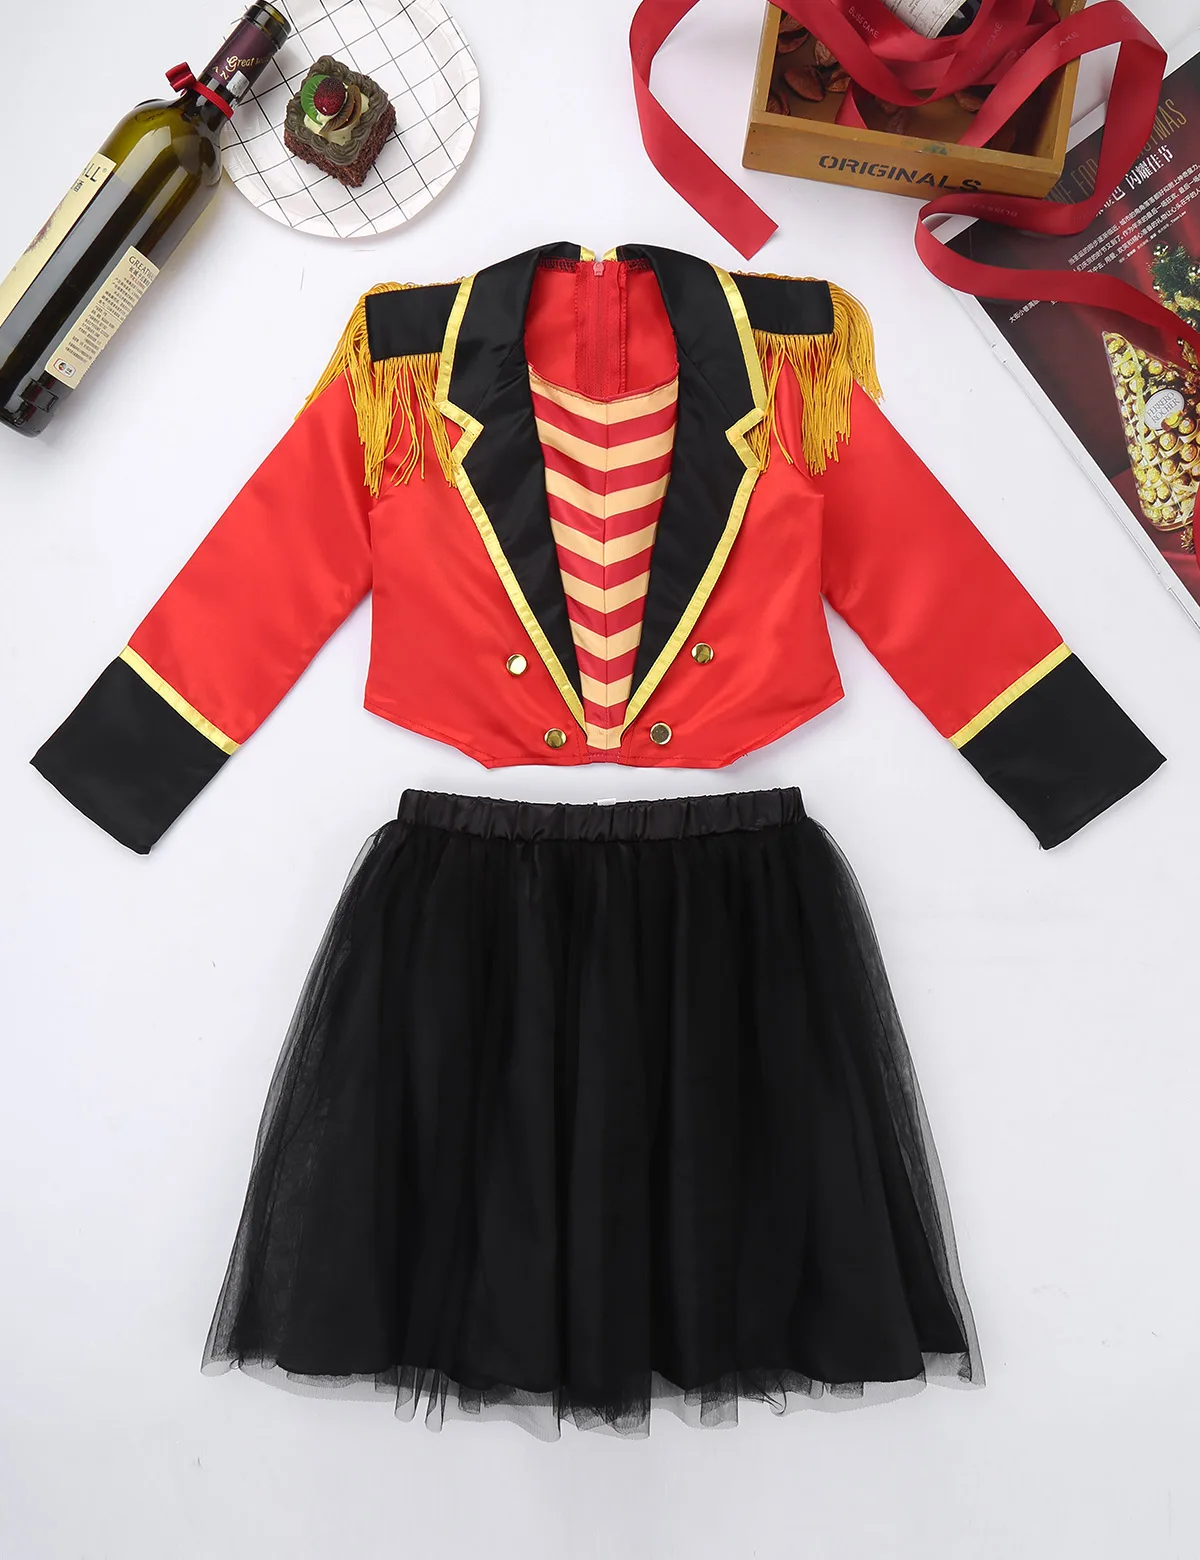 DPOIS/Детский костюм для ролевых игр на Хеллоуин для девочек с изображением цирка рингмейстера детские нарядные вечерние костюмы с юбкой-пачкой